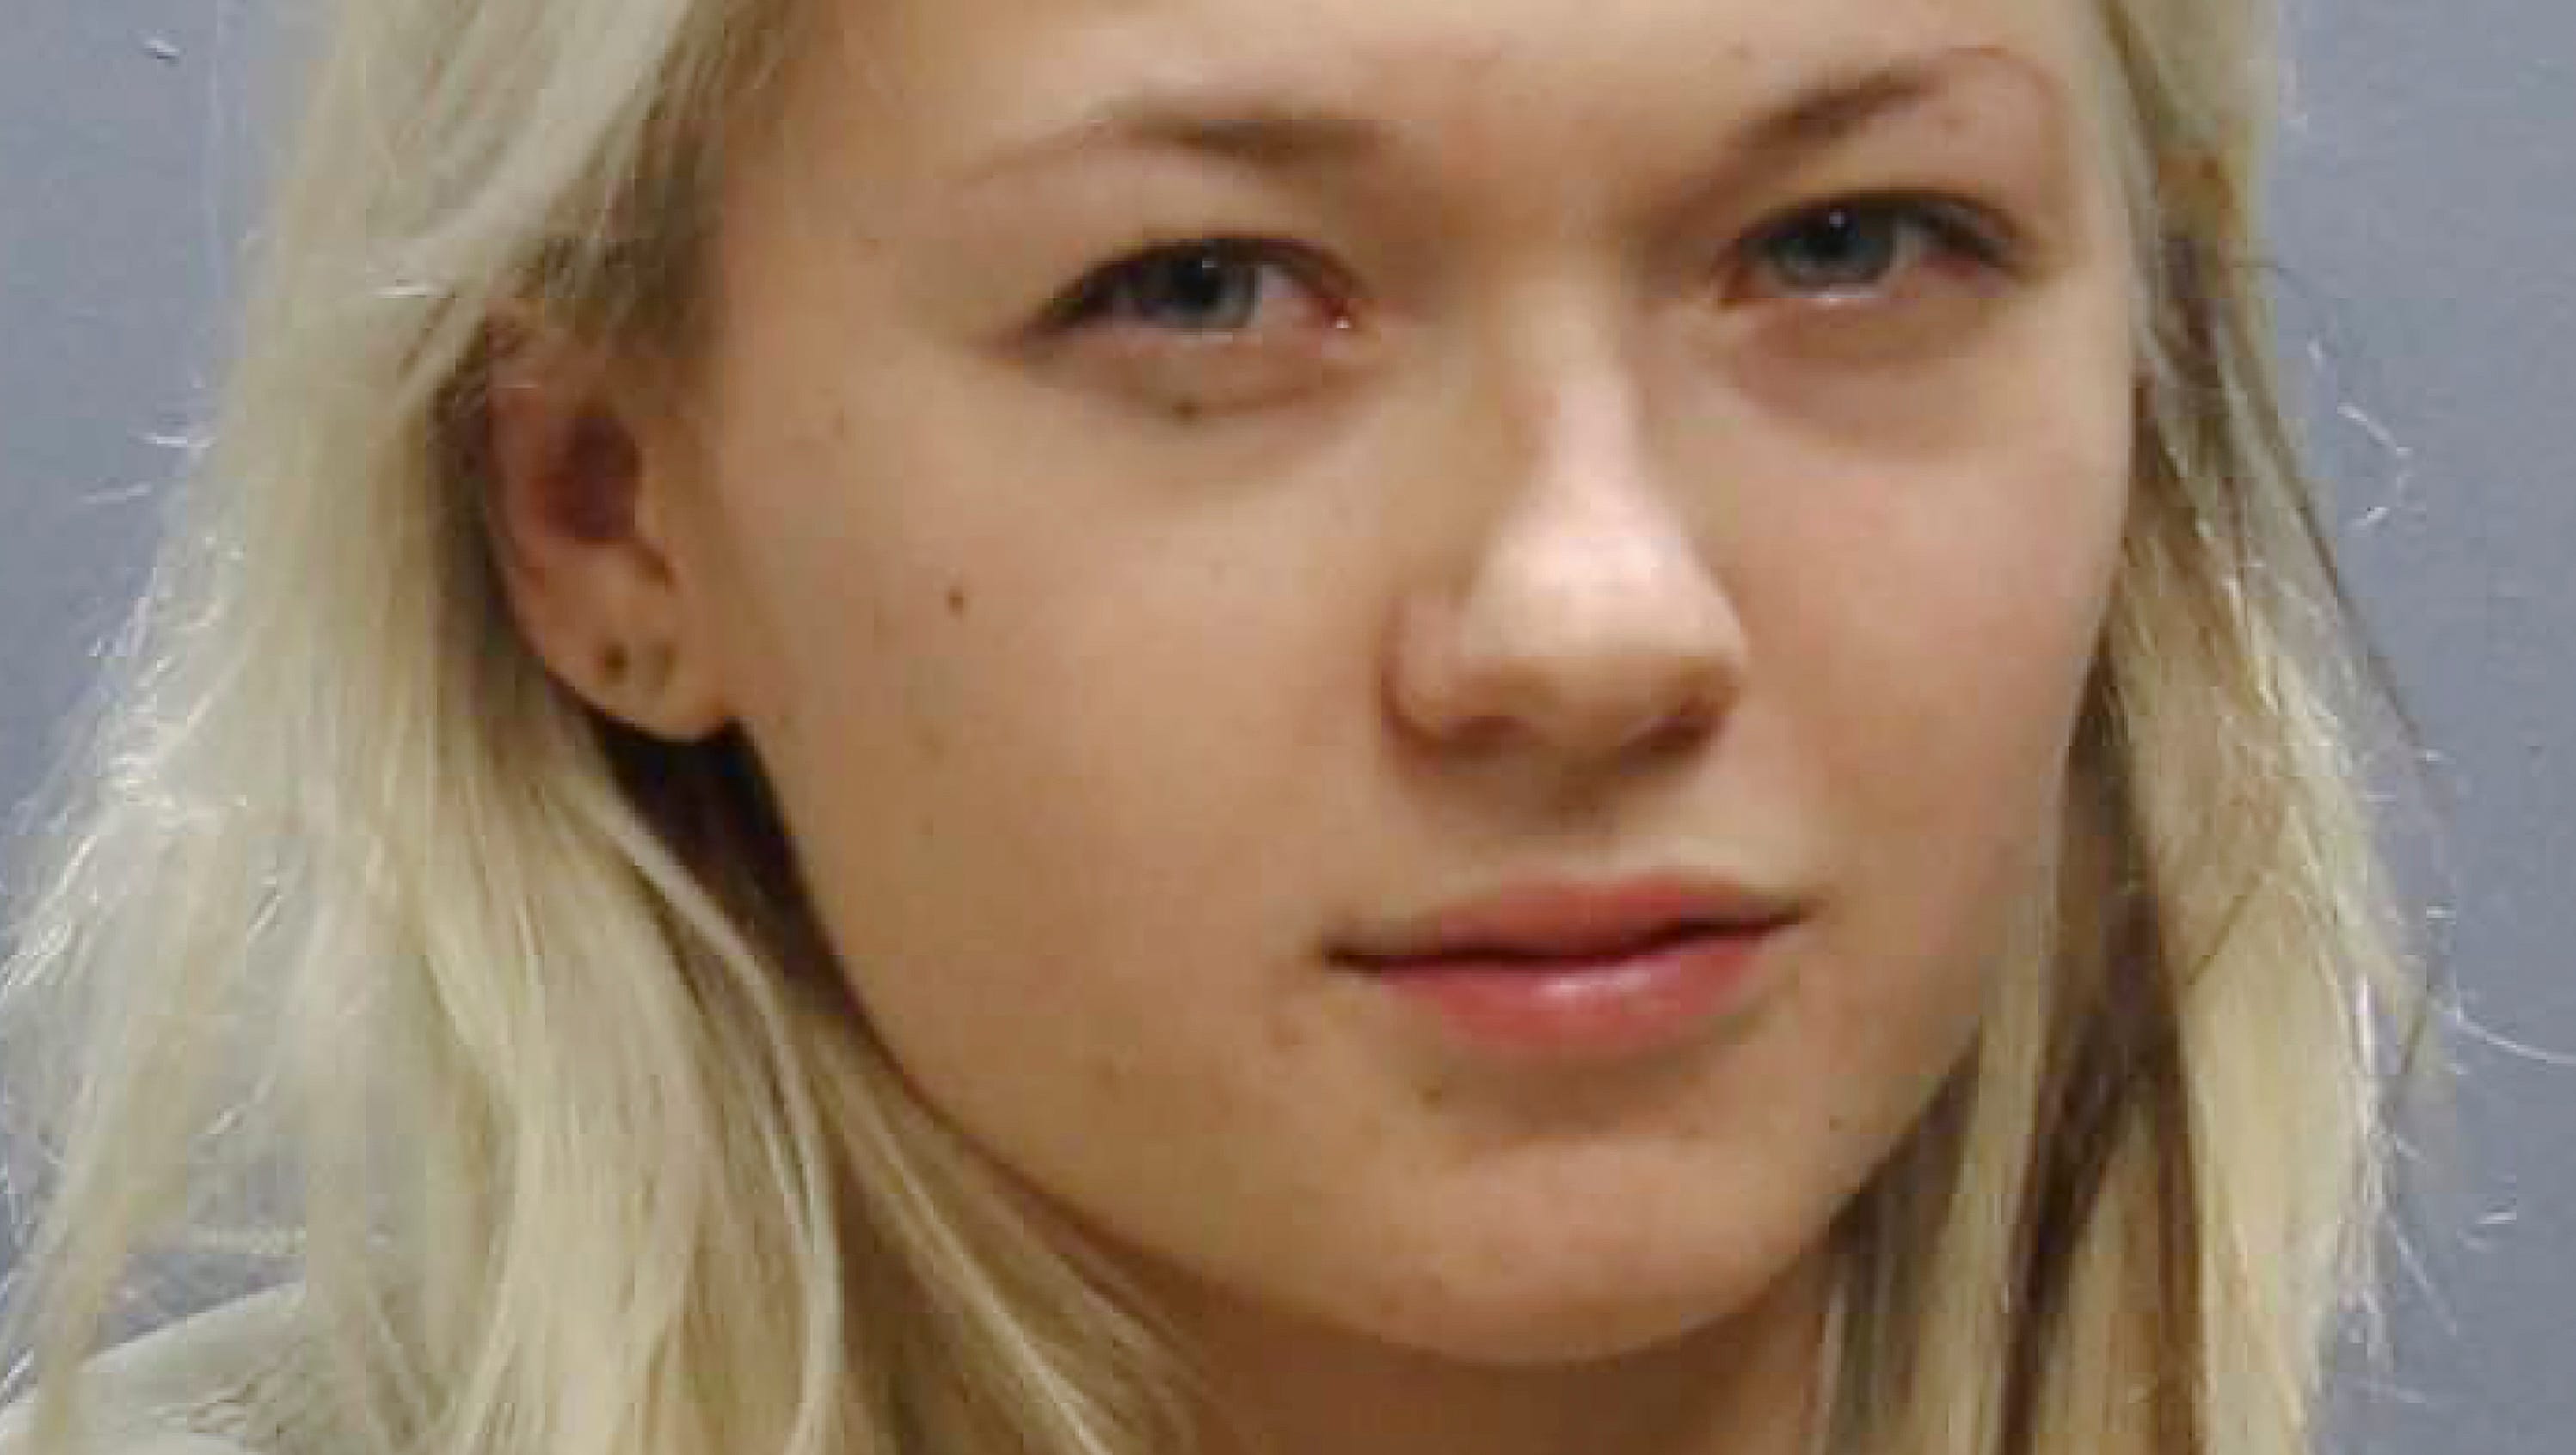 Russian Schoolgirl - Teen pleads not guilty to livestreaming friend's rape